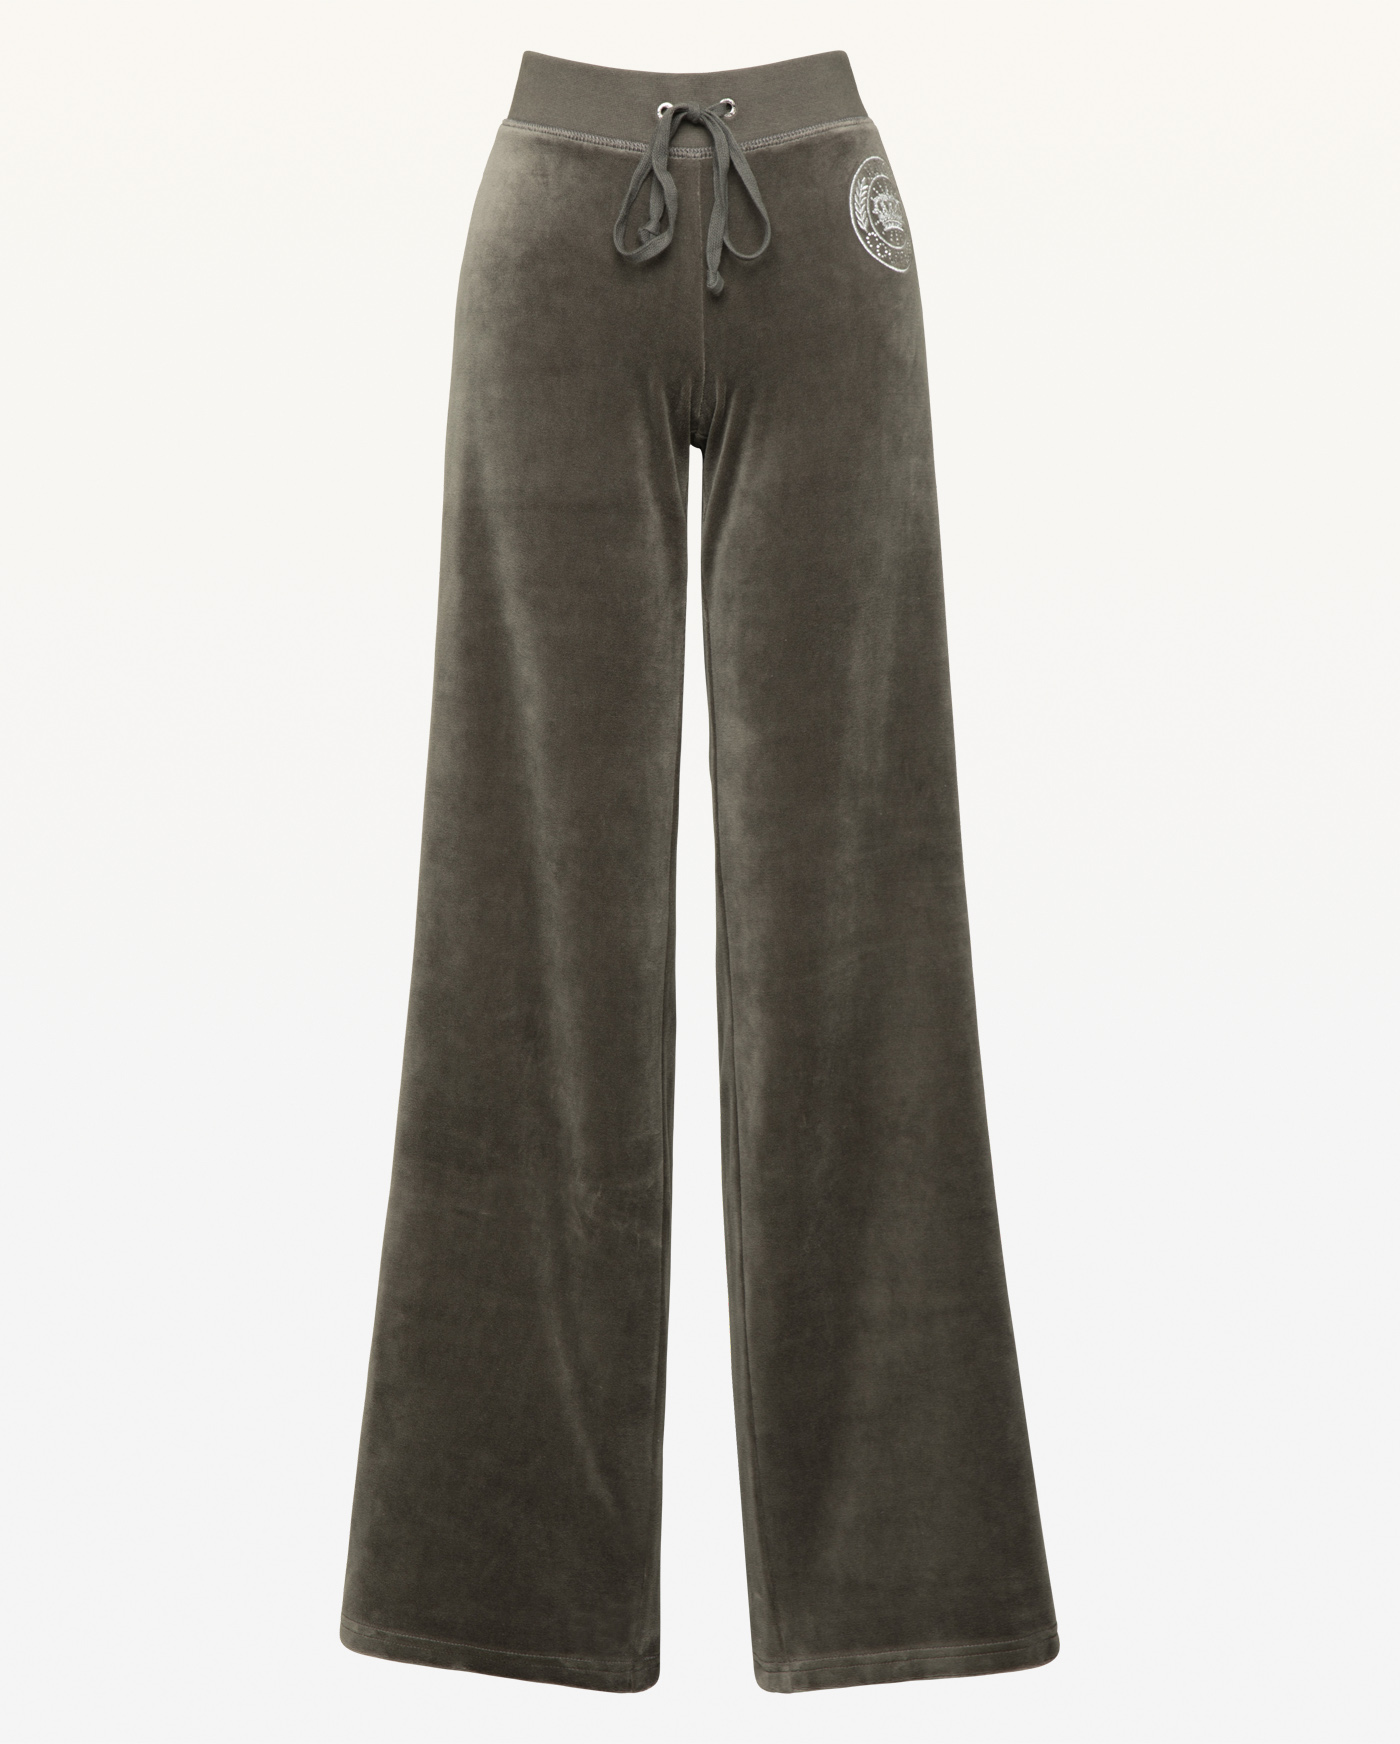 Велюровые брюки прямого кроя декорированы вышивкой и стразами